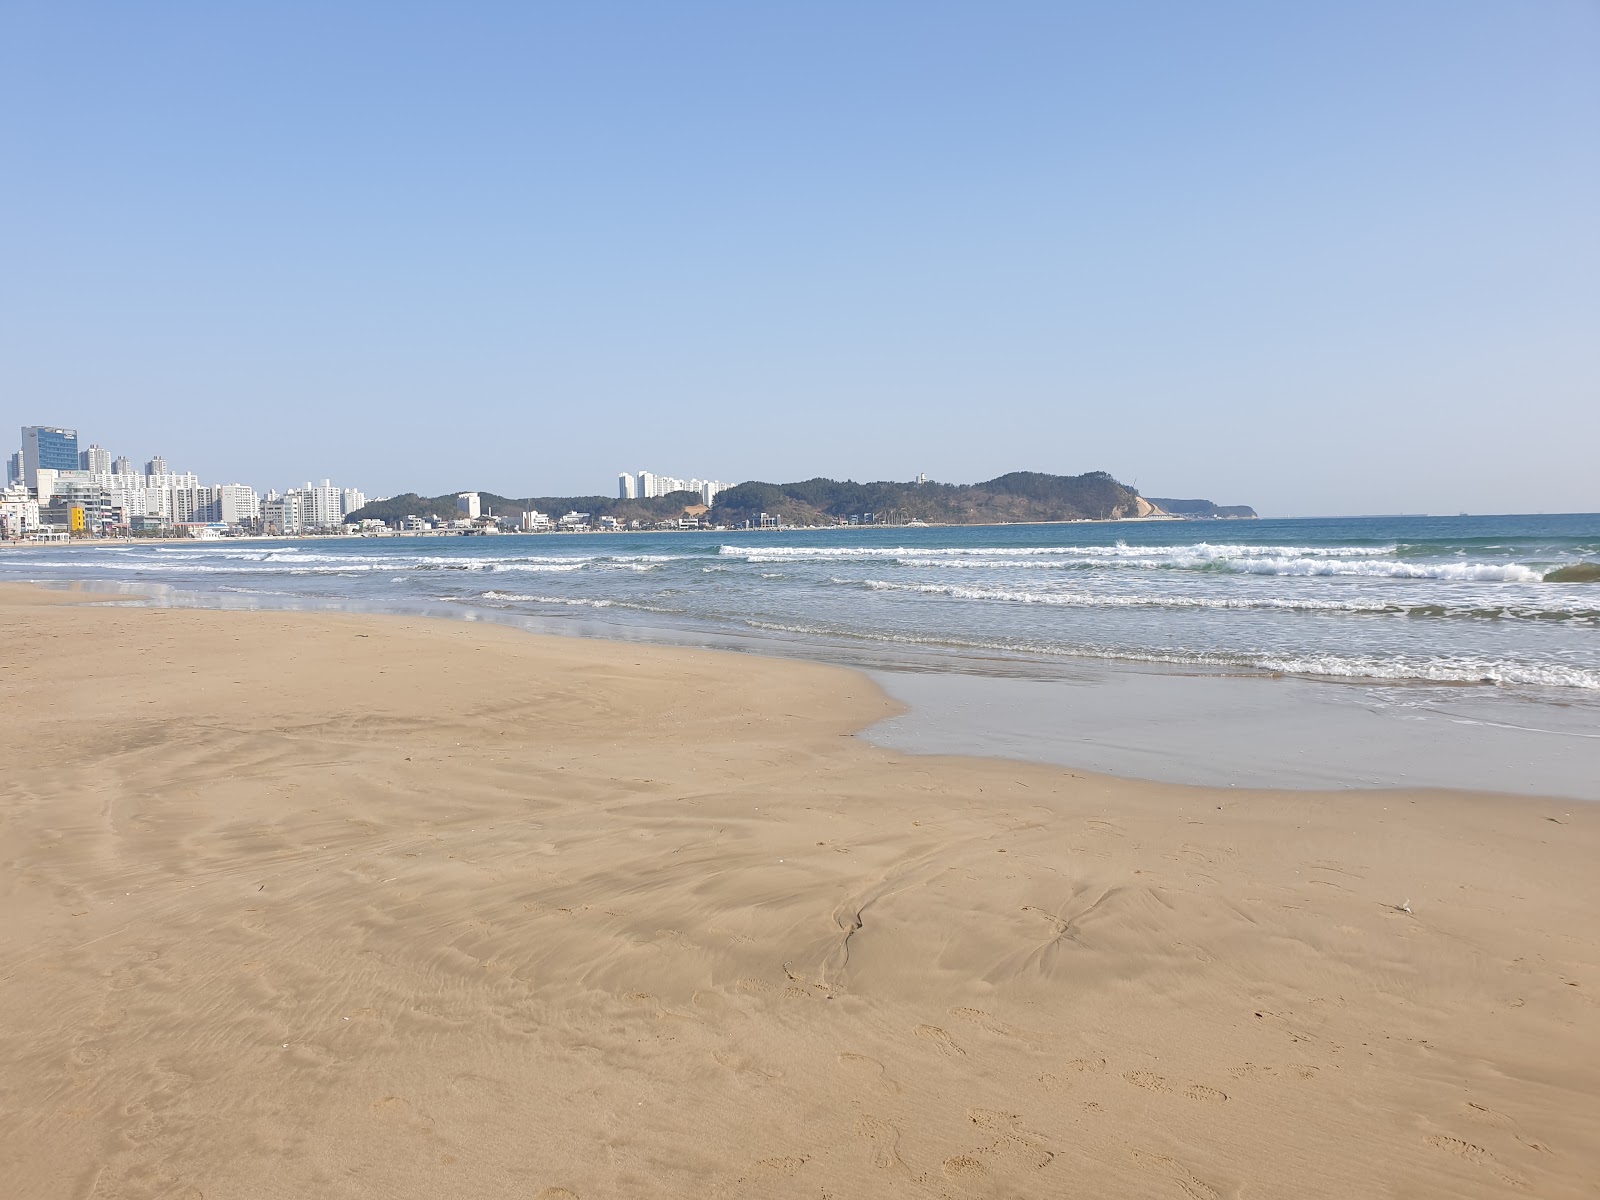 Fotografie cu Yeongildae Beach - locul popular printre cunoscătorii de relaxare